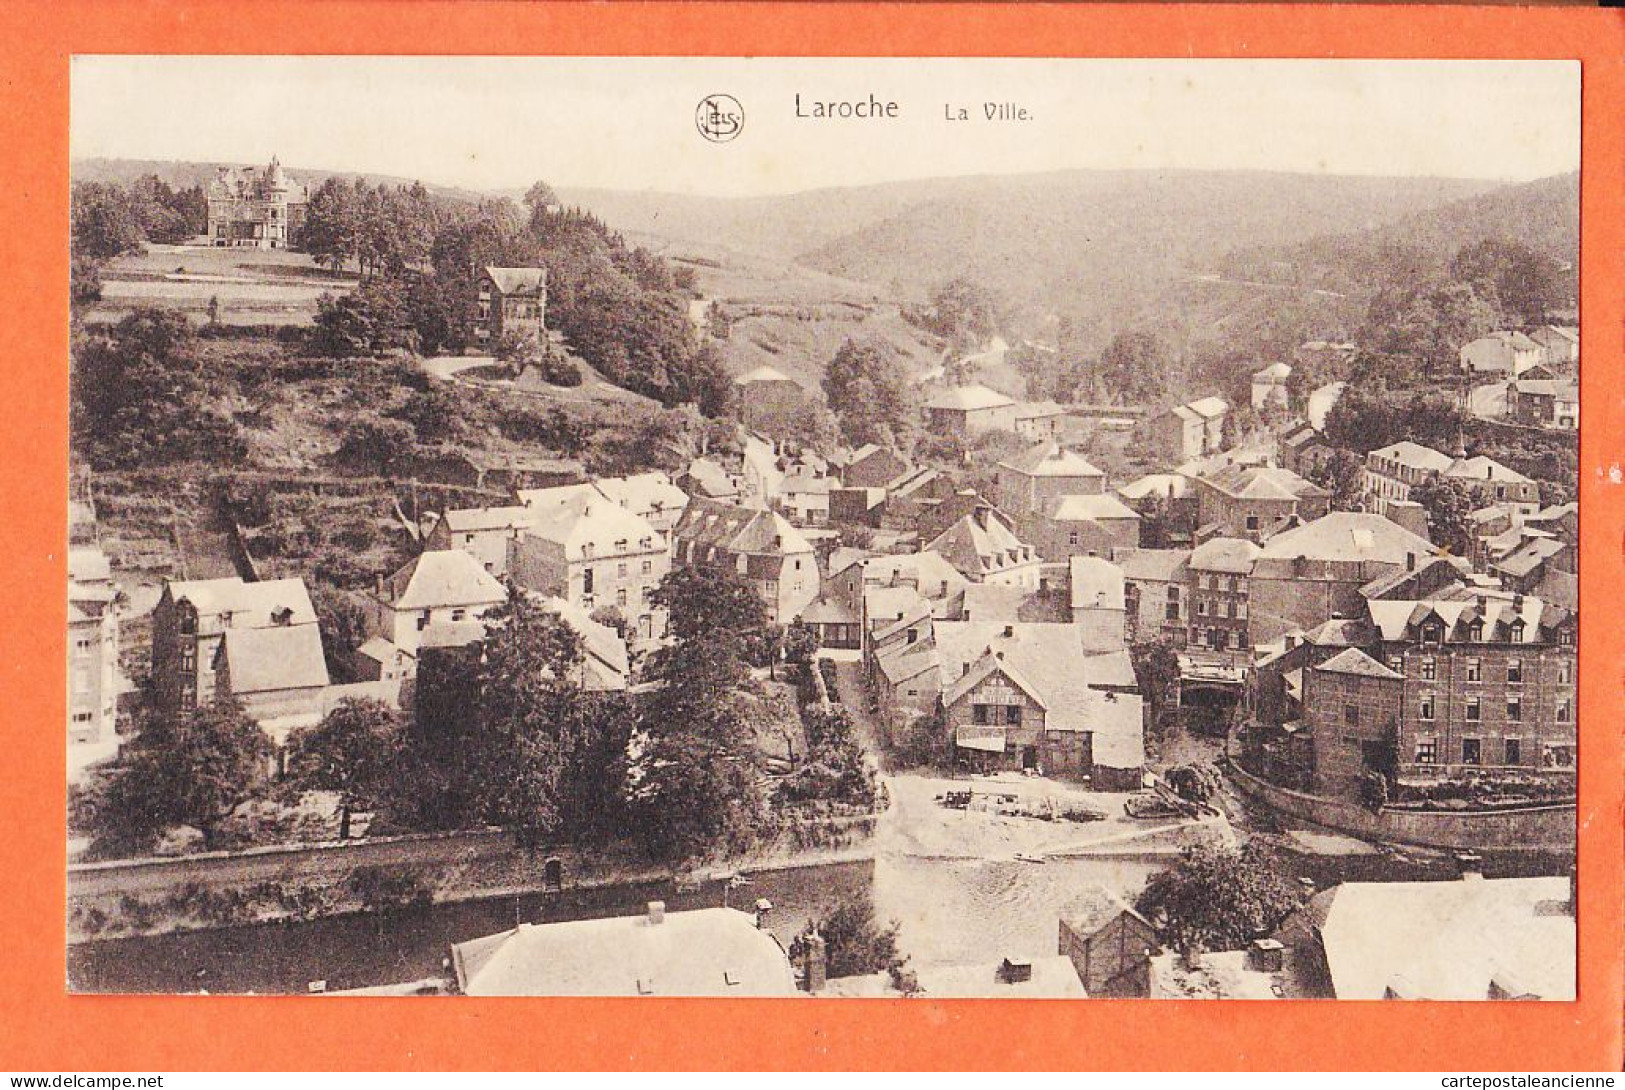 31516 / LAROCHE Belgique La Ville 1920s ● Luxembourg La-Roche-en-Ardenne ● NELS THILL Série 24 N°45 - La-Roche-en-Ardenne